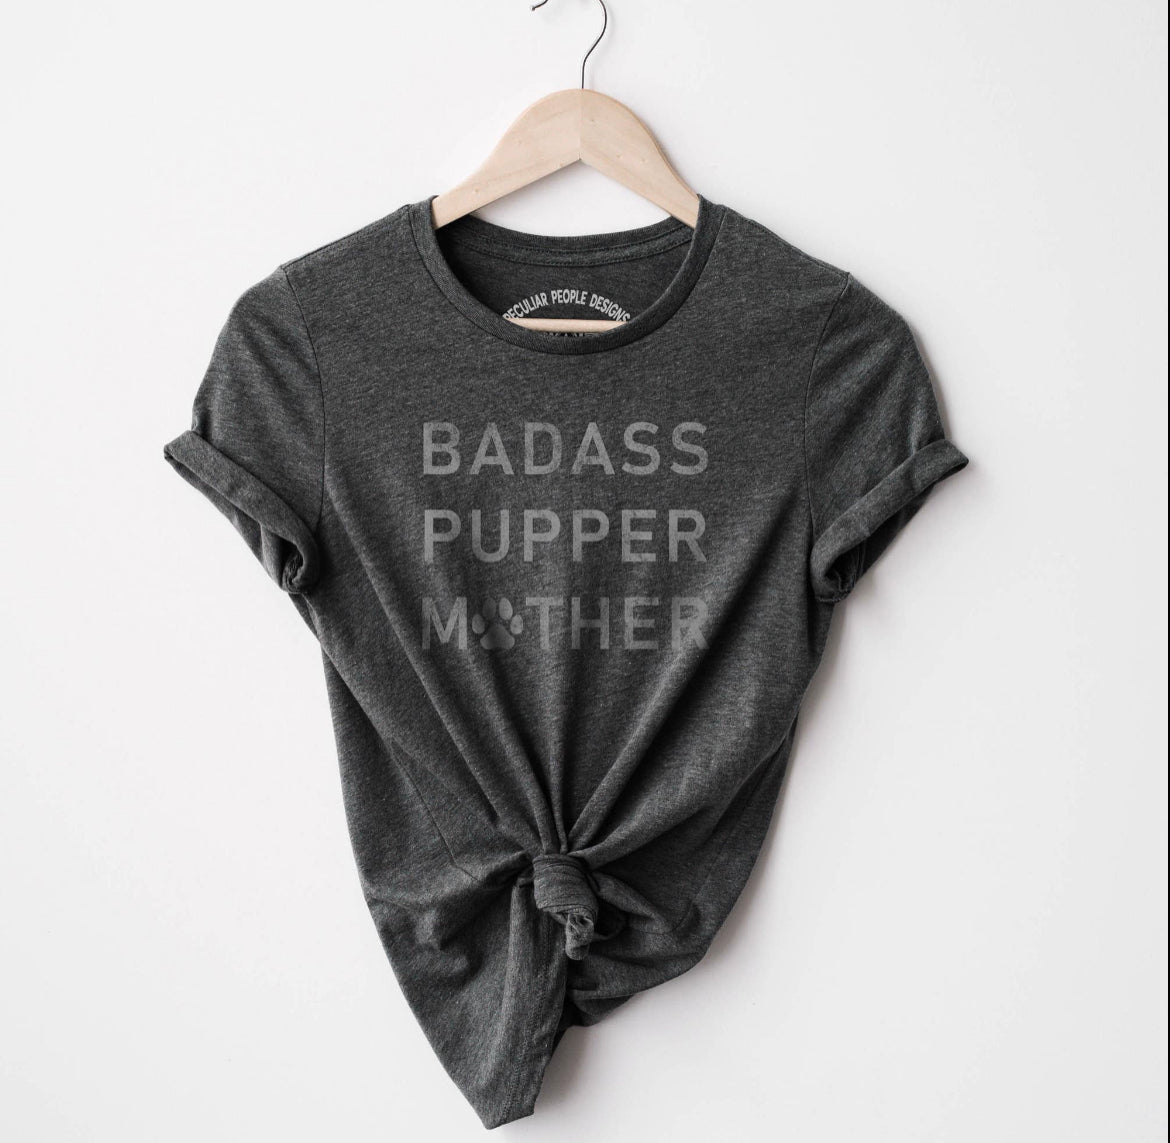 "Badass Pupper Mother" Tees Crew neck